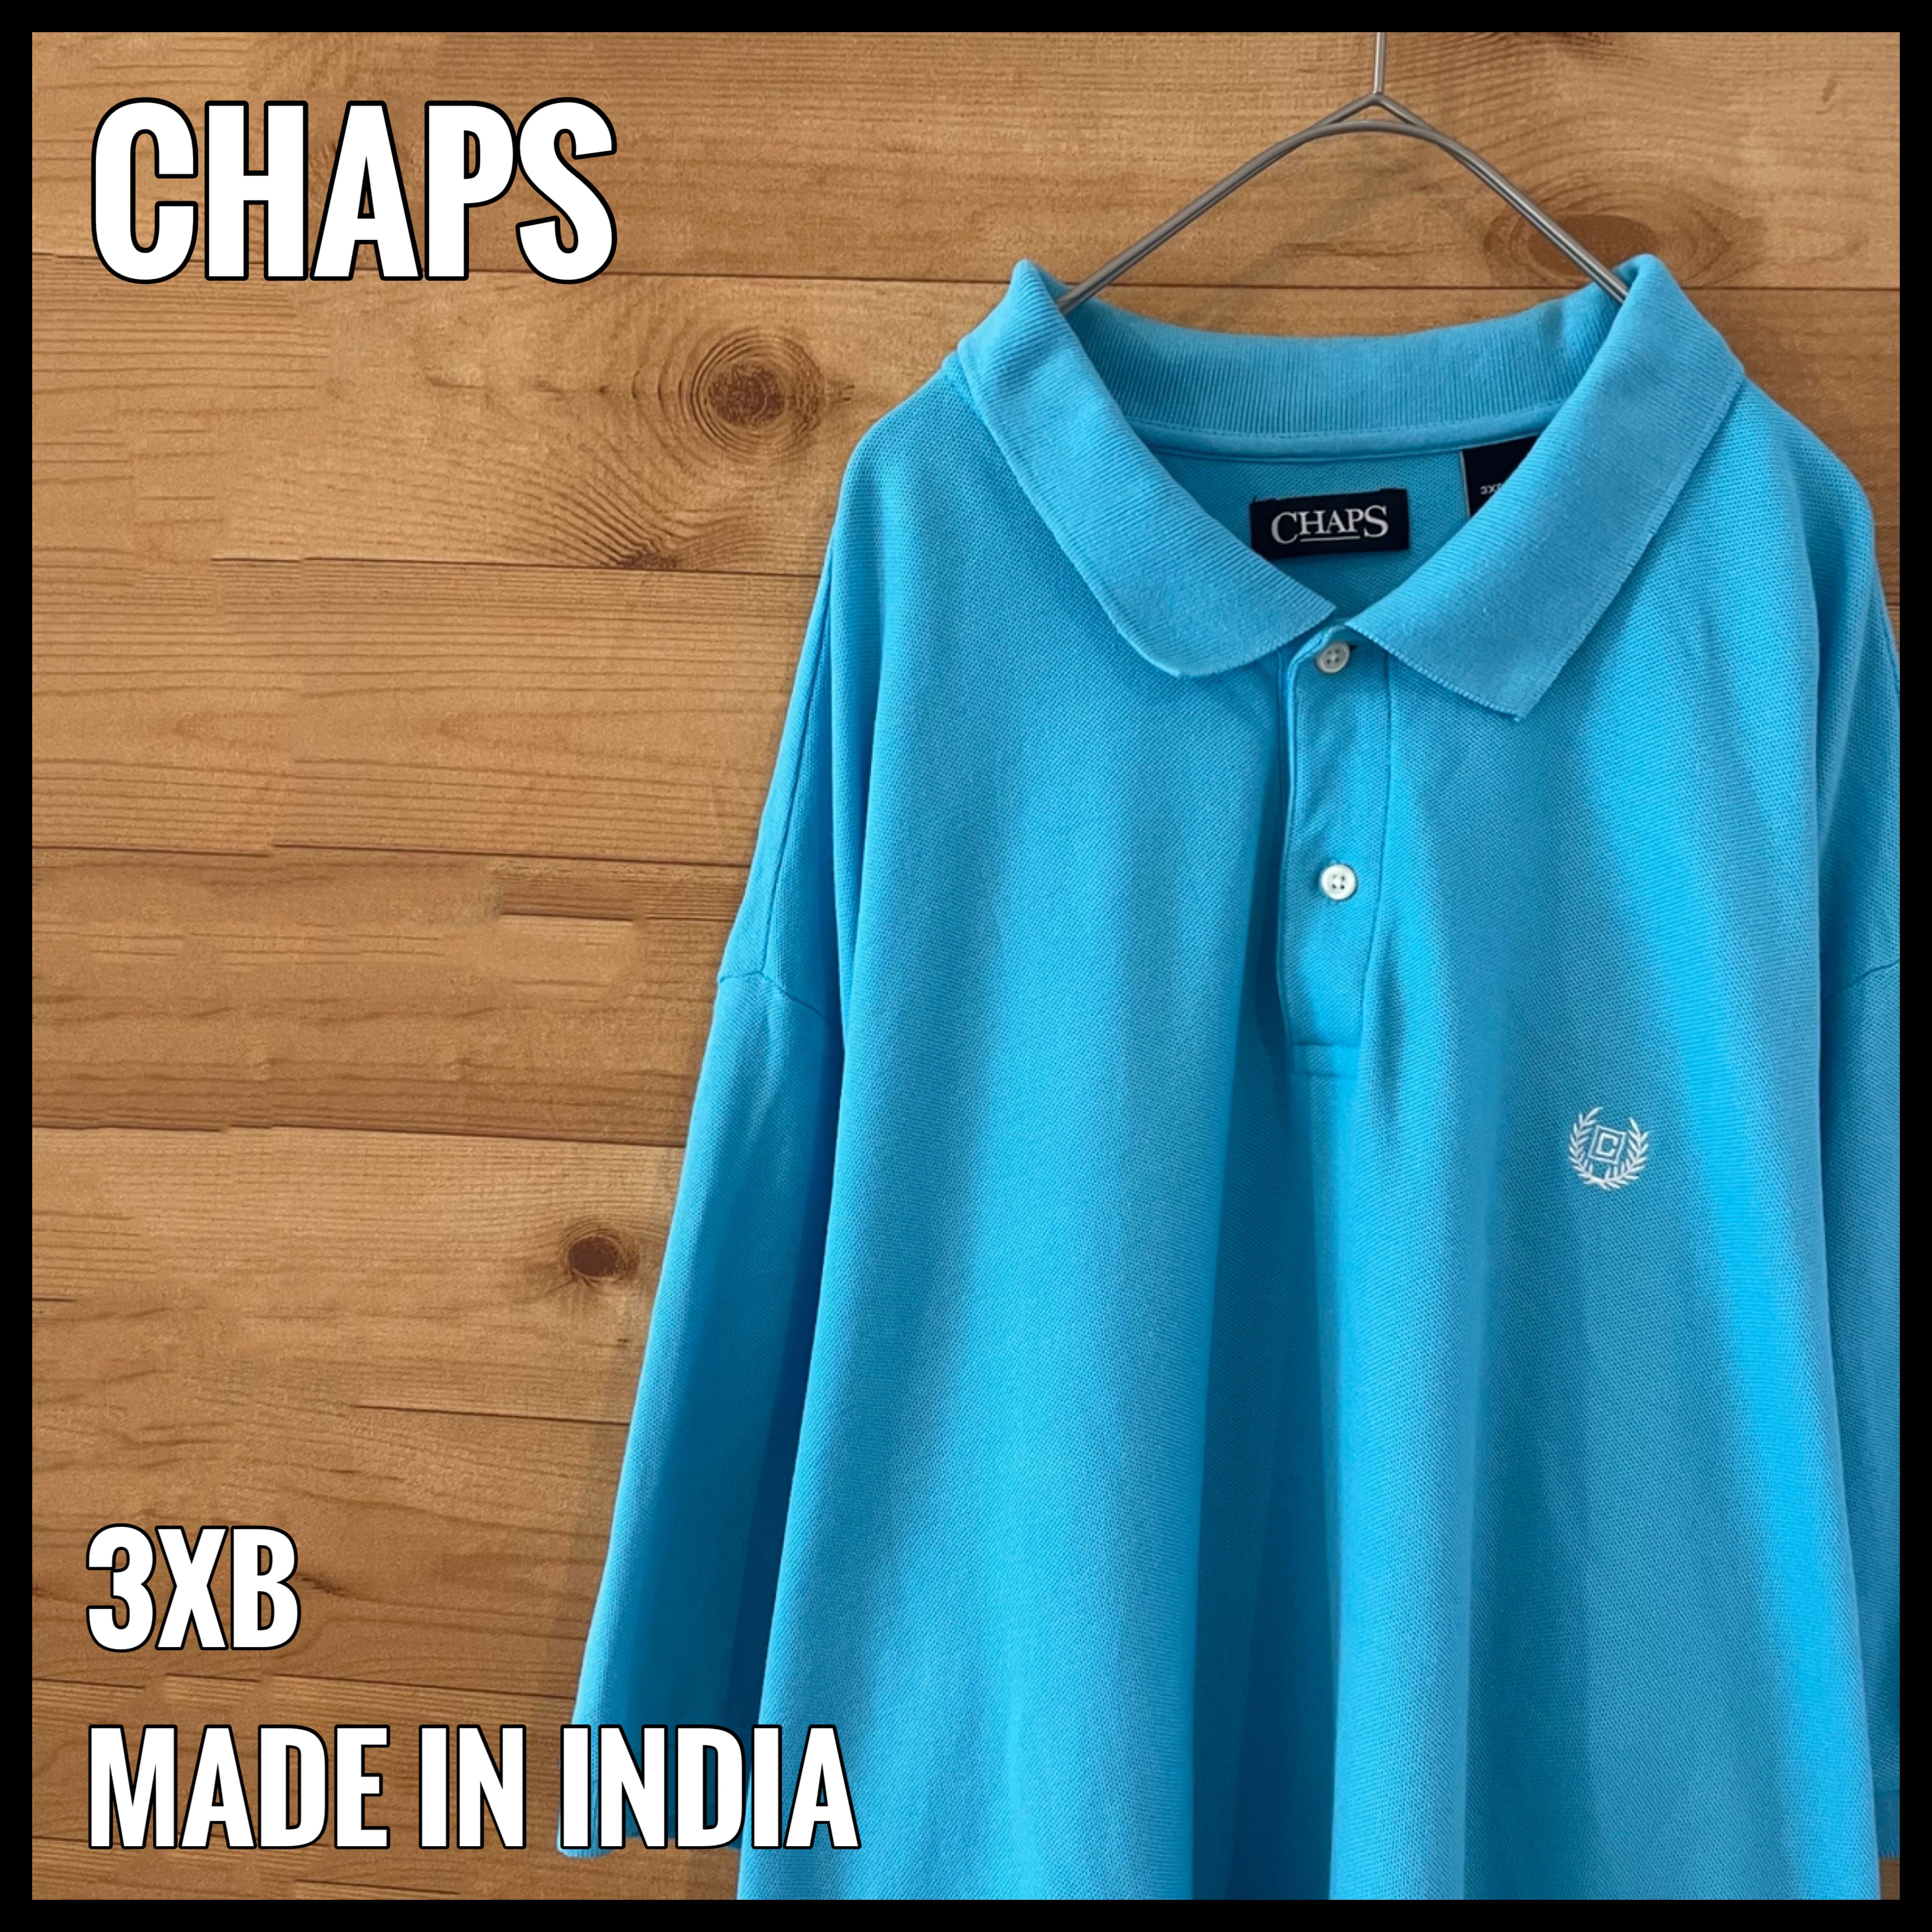 CHAPSビッグサイズ ポロシャツ 3XB 刺繍ロゴ ライトブルー